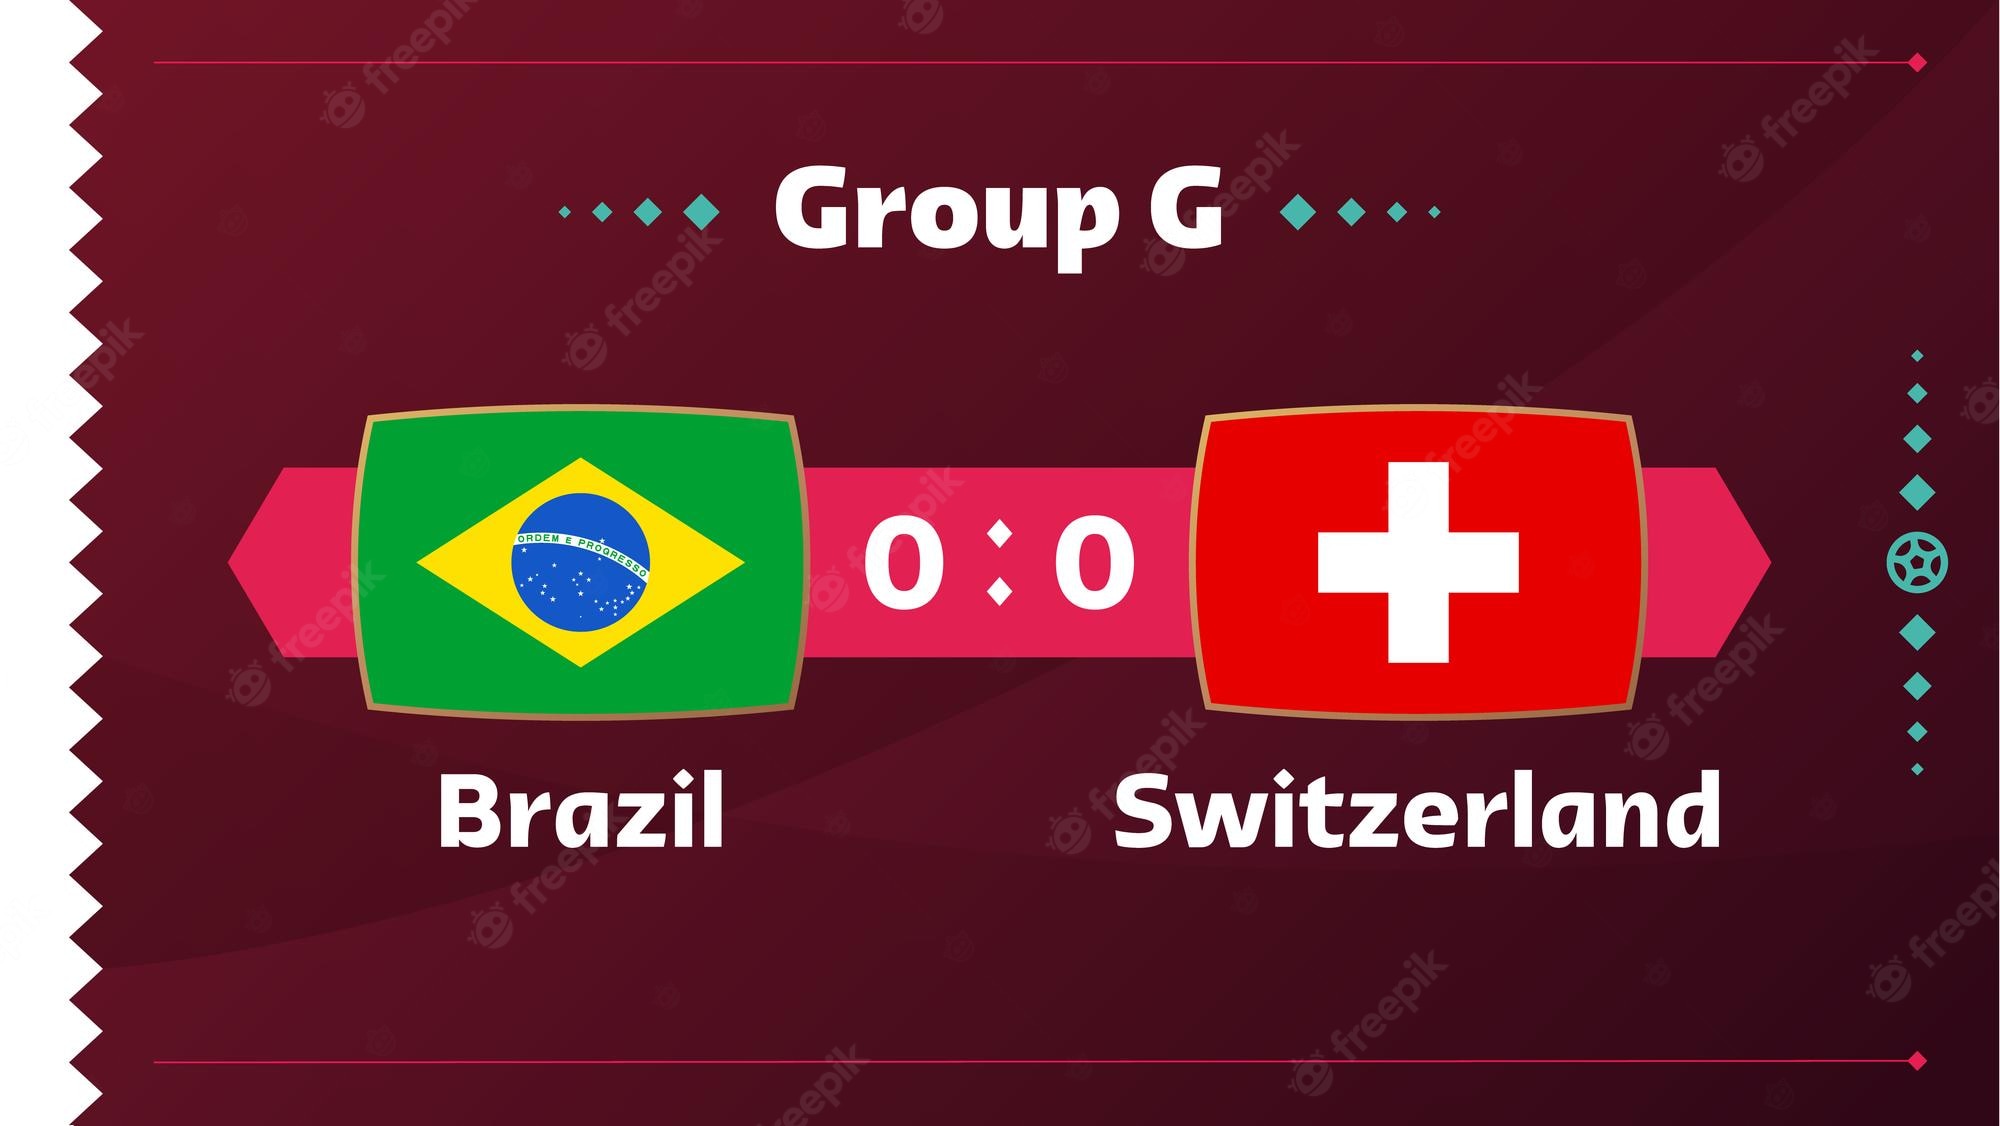 تعرف على طرق مشاهدة مباراة البرازيل ضد سويسرا يلا شوت والقنوات الناقلة المفتوحة HD مجانا بتاريخ اليوم الأحد 27-11-2022 في كأس العالم 2022 قطر